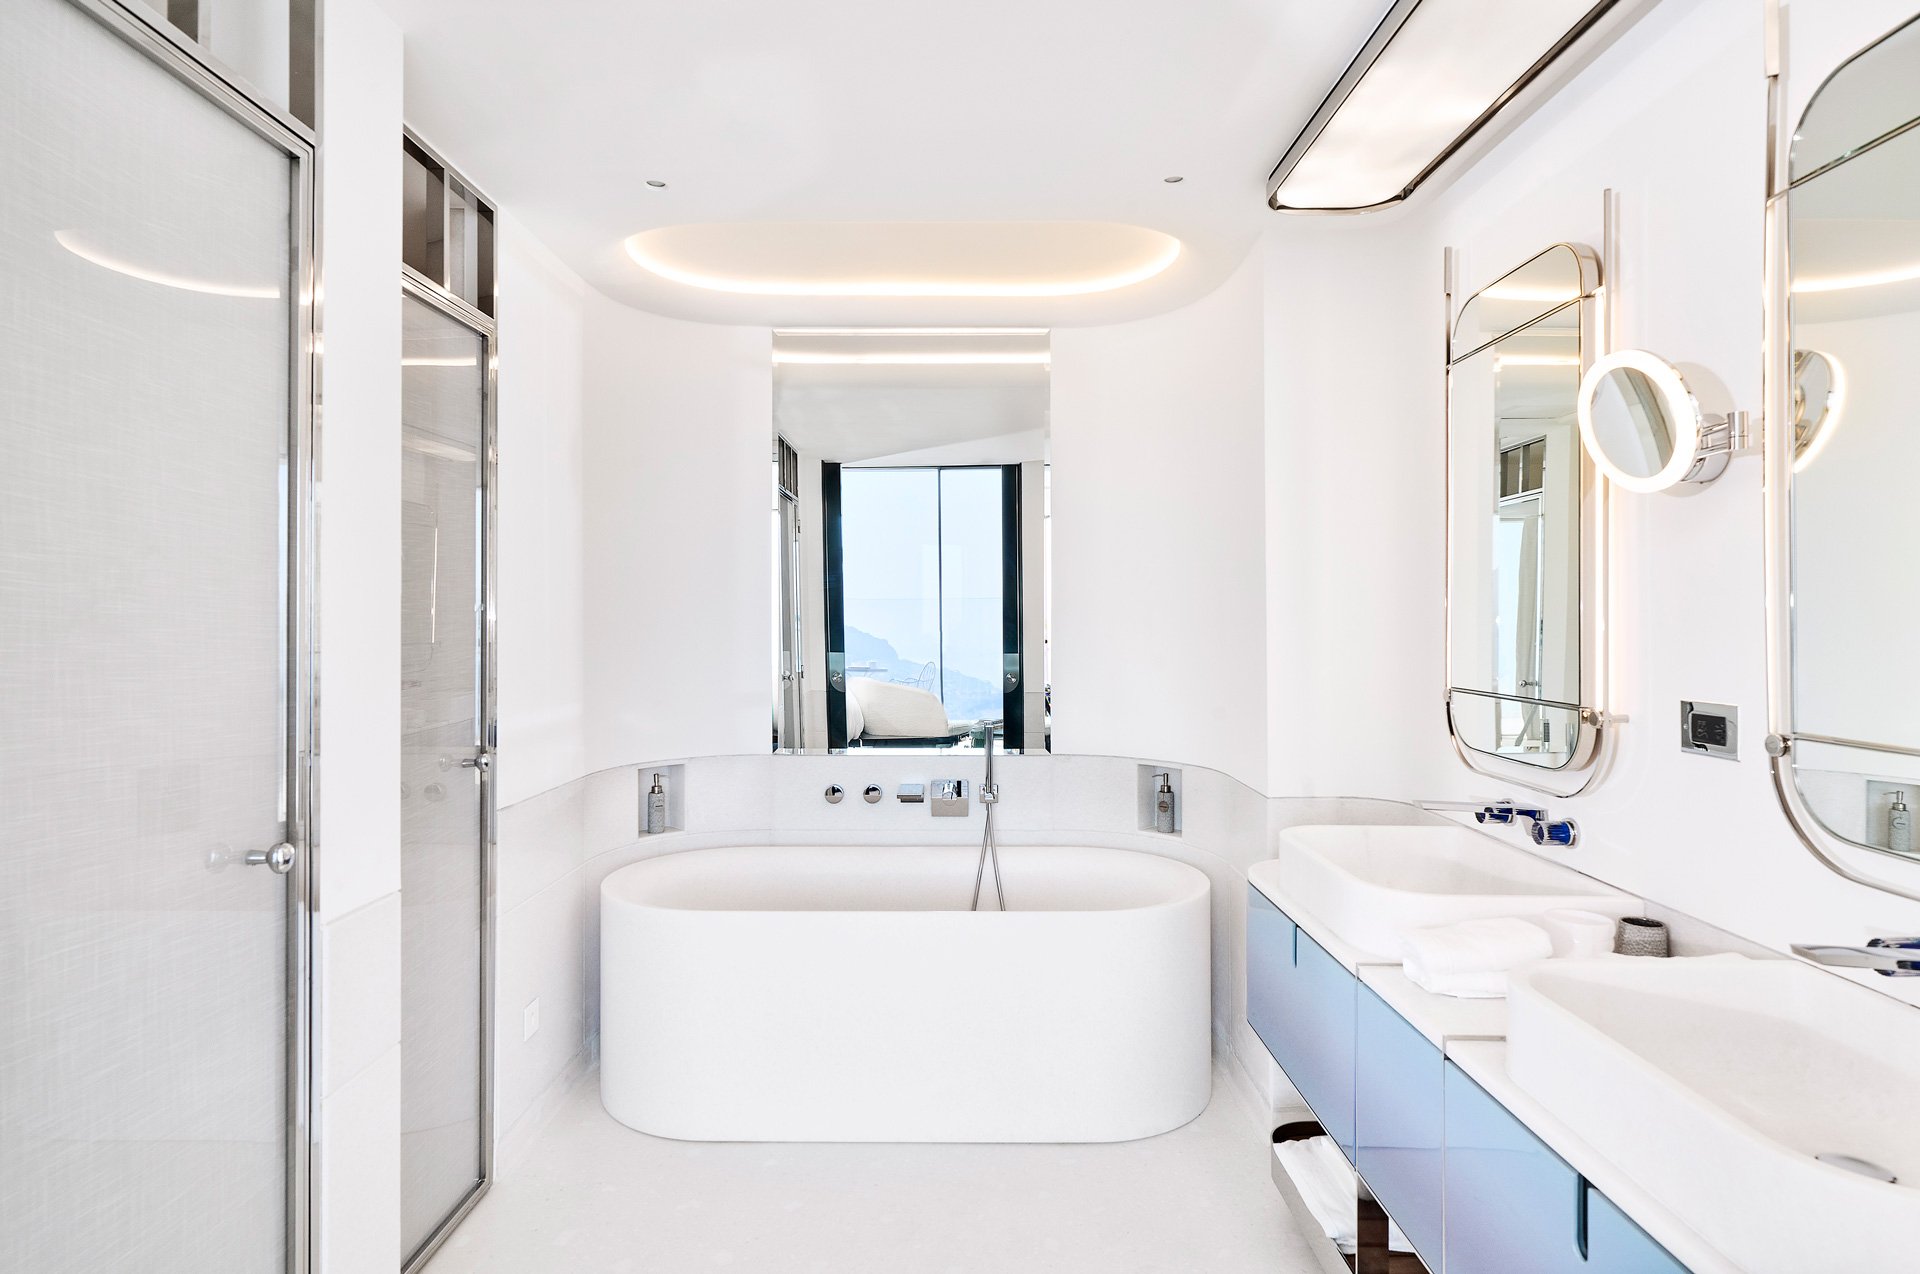 A spacious white bathroom with a white bathtub.